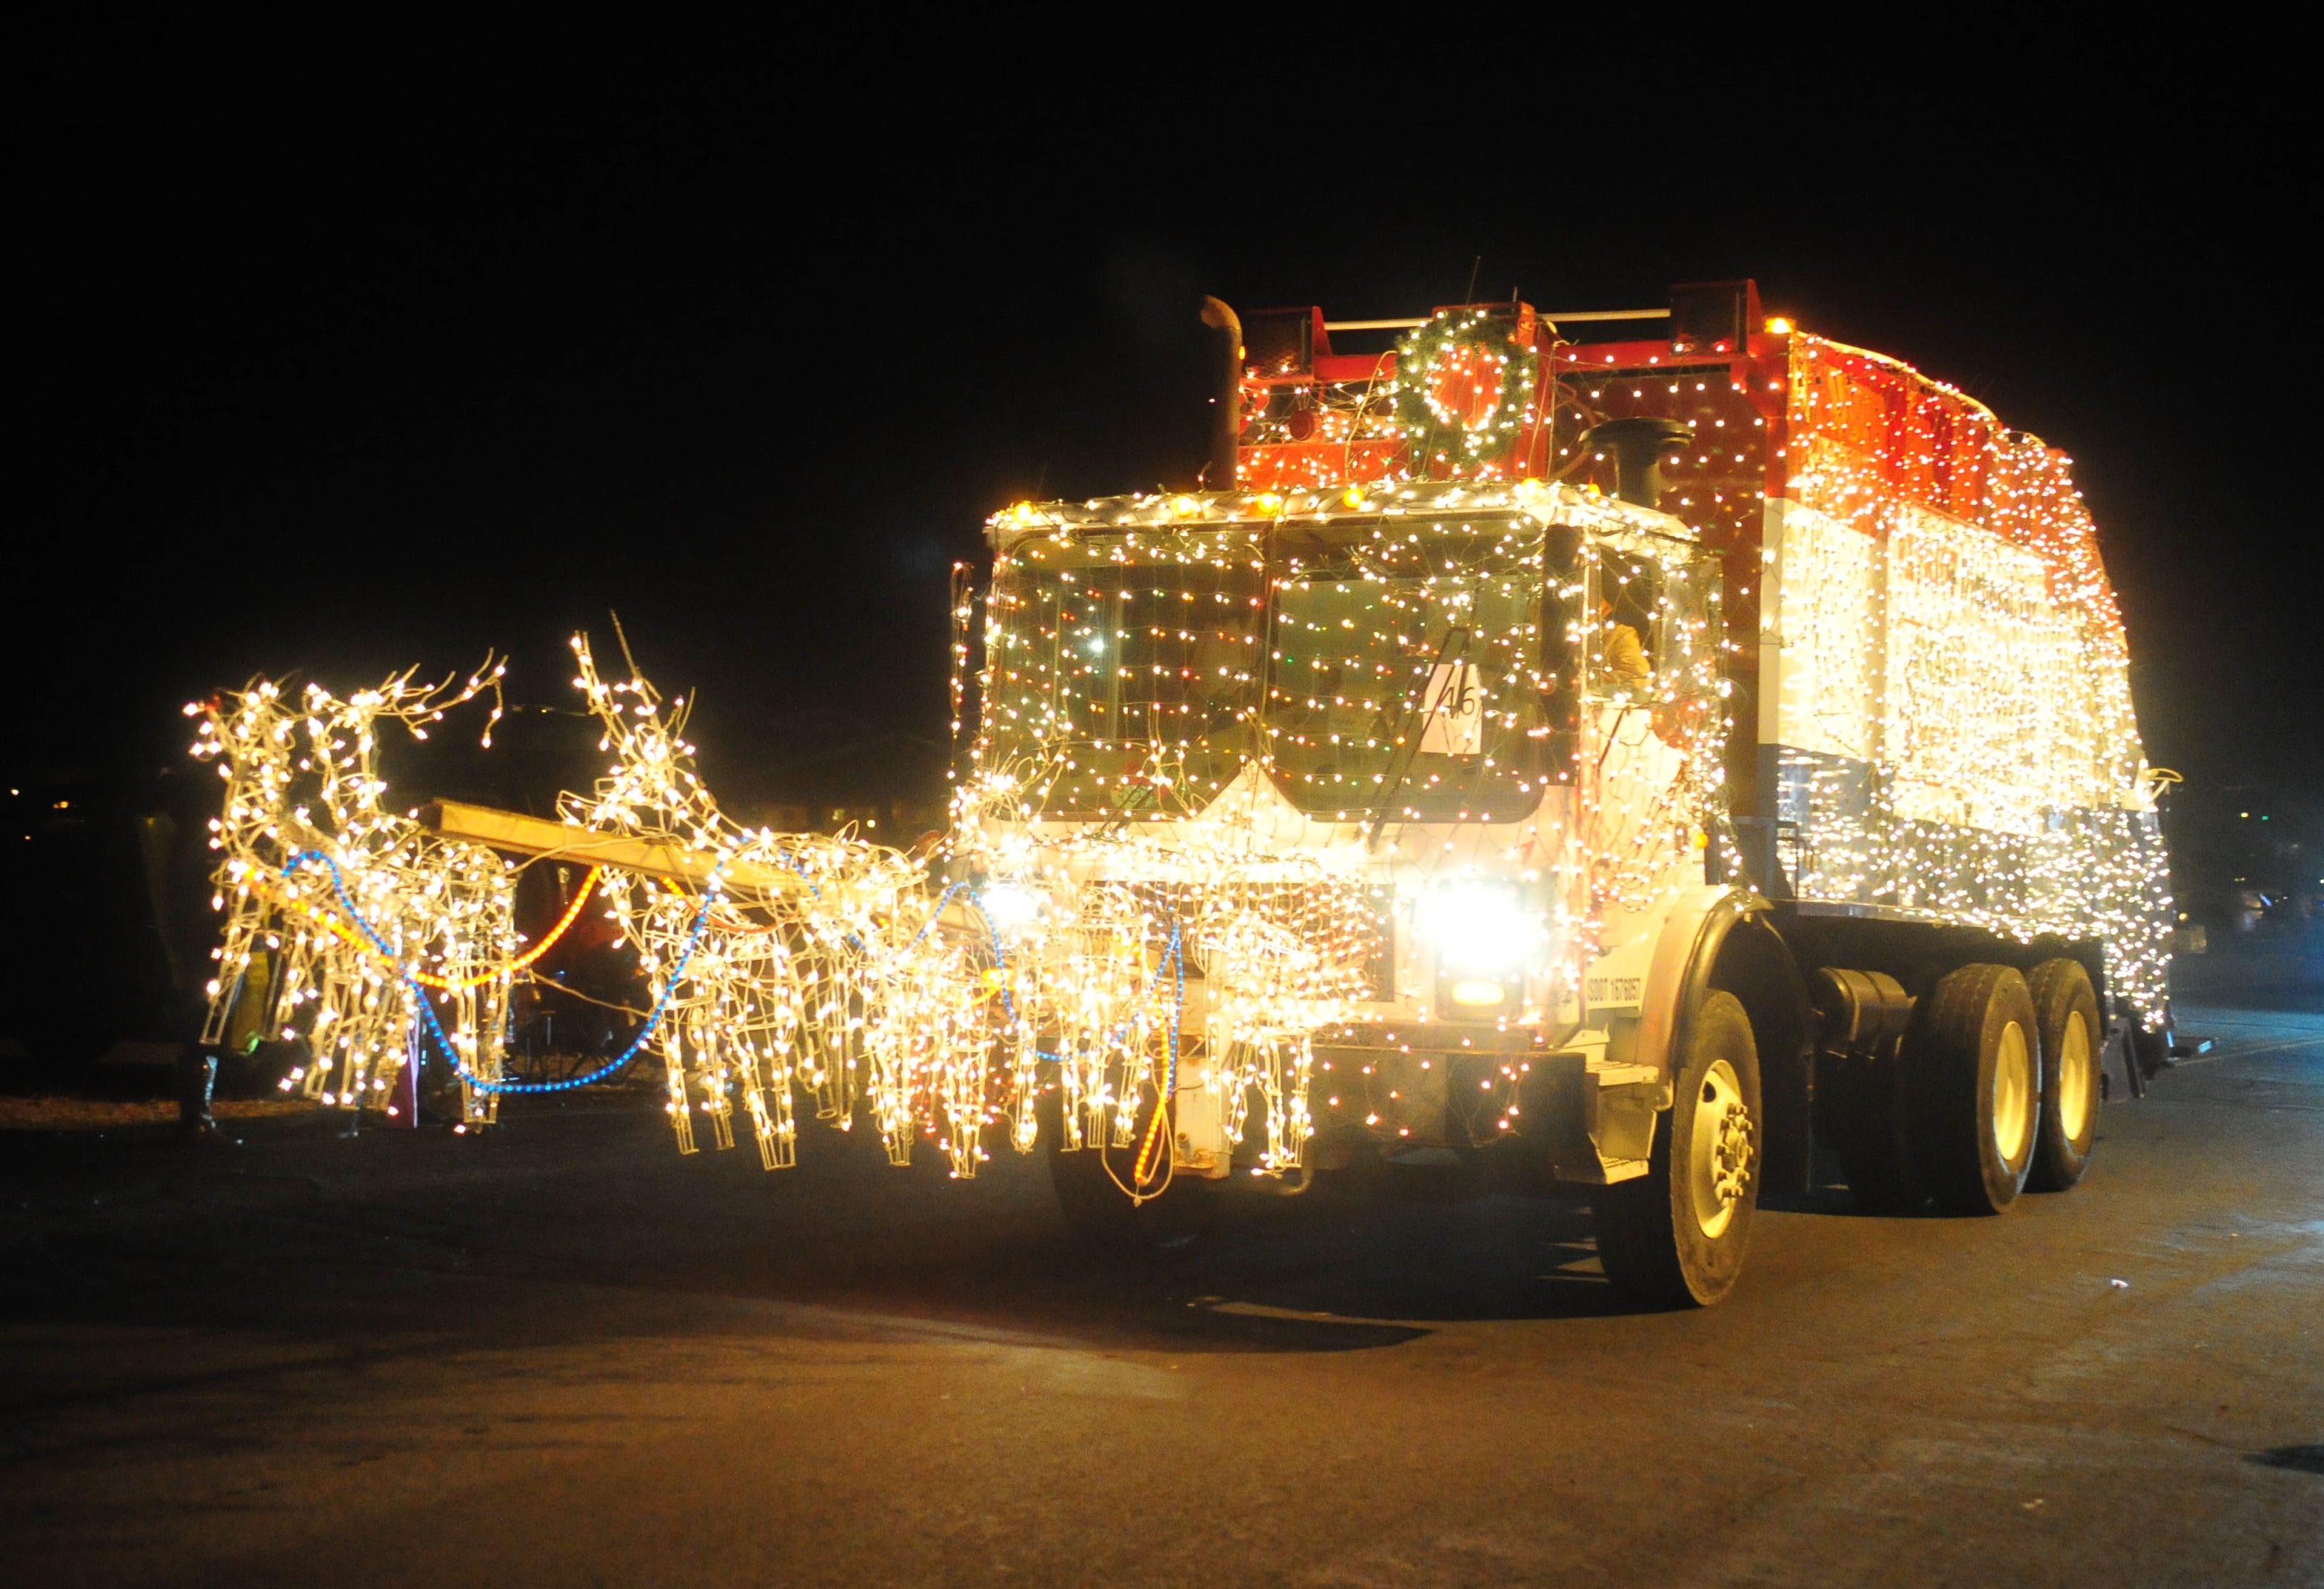 Prescott Valley Festival of Lights, Parade set for Dec. 6 The Daily